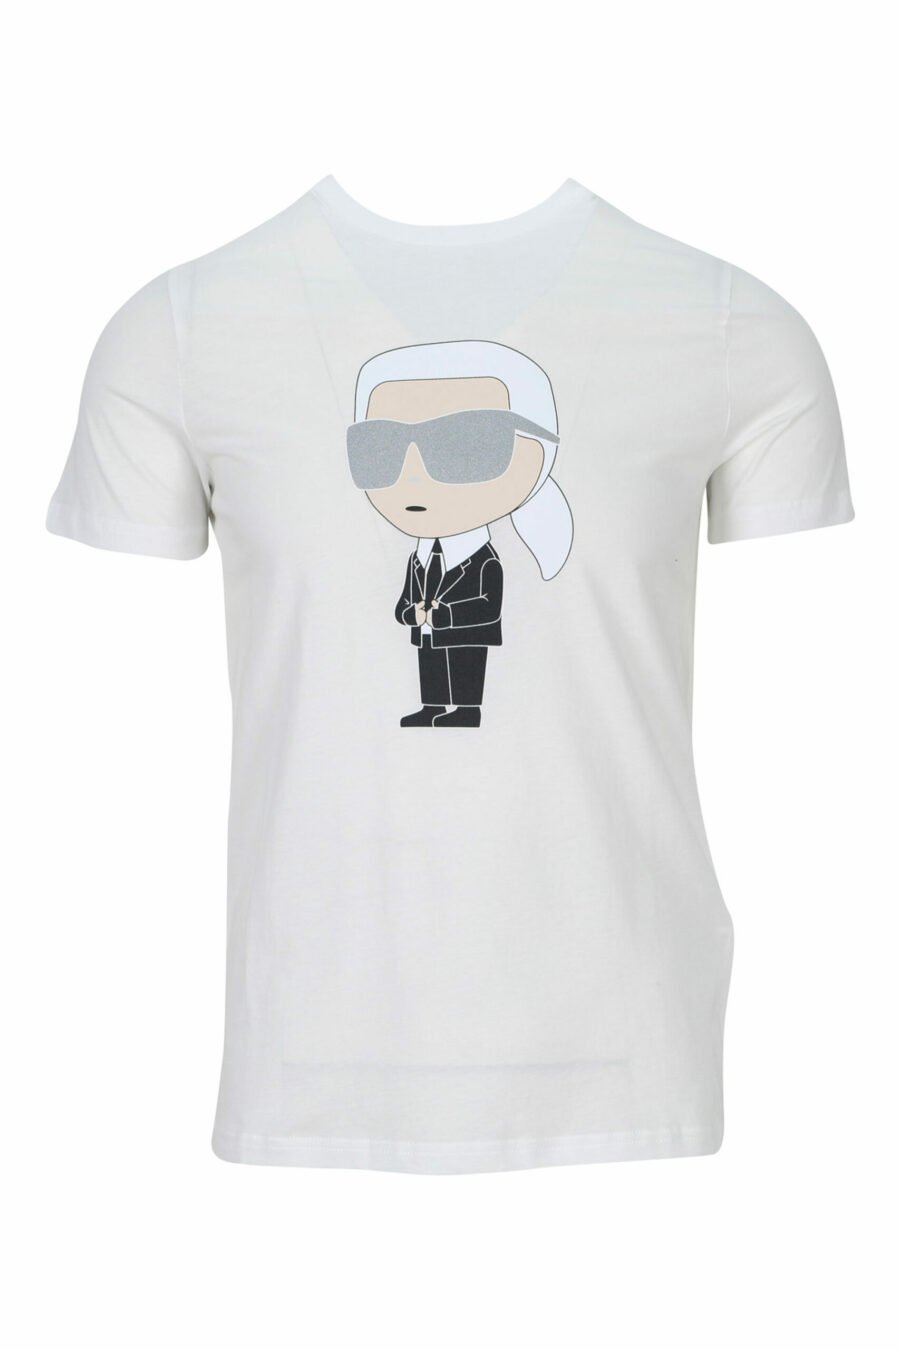 Weißes Rundhals-T-Shirt mit "karl" Maxilogo - 4062225535237 skaliert